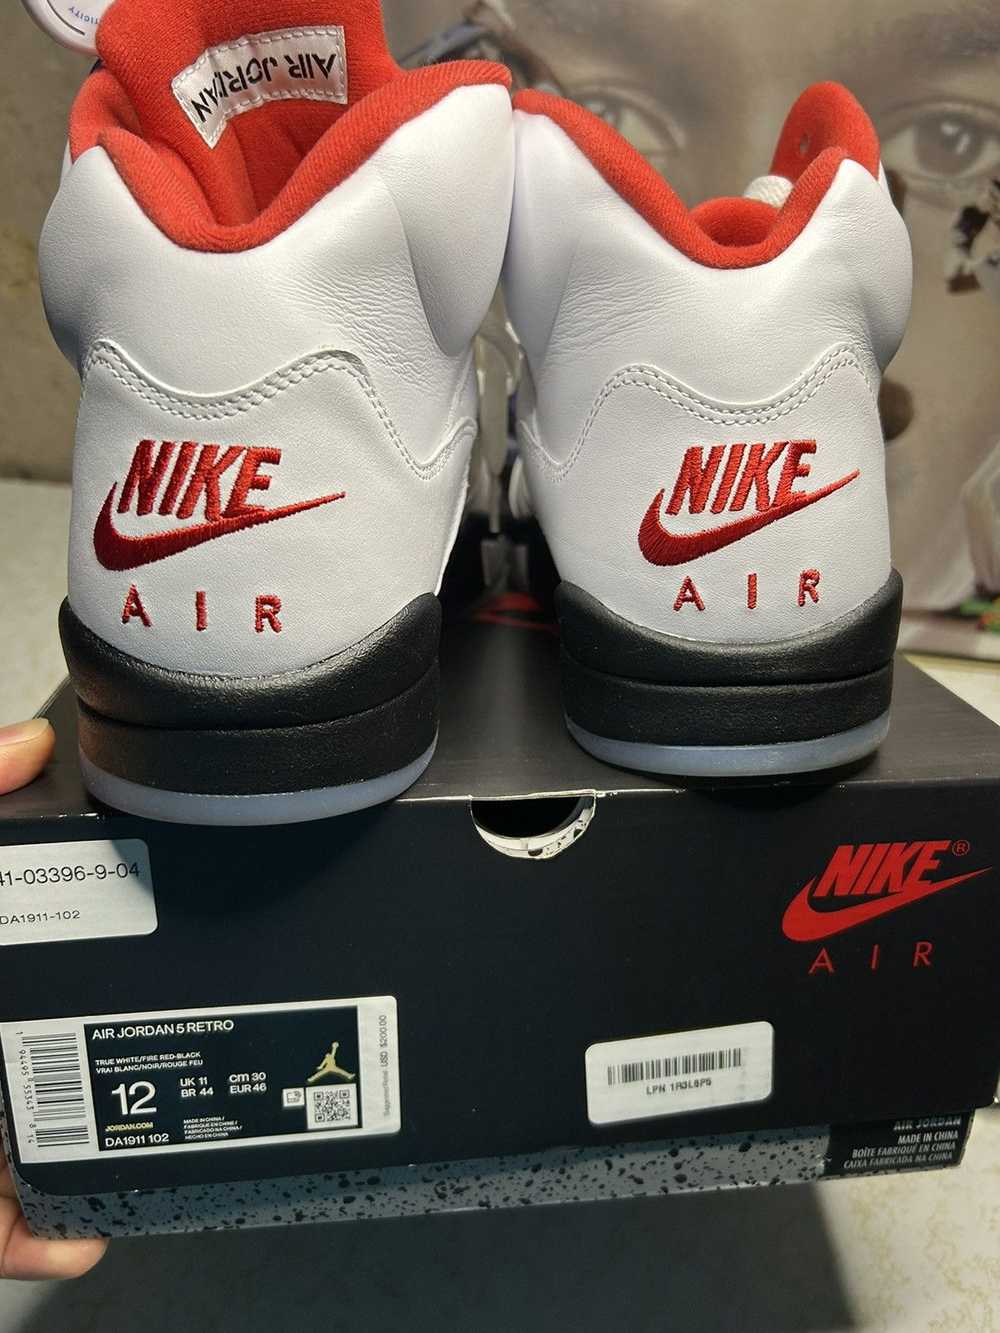 Jordan Brand Air Jordan 5 “fire red” - image 6